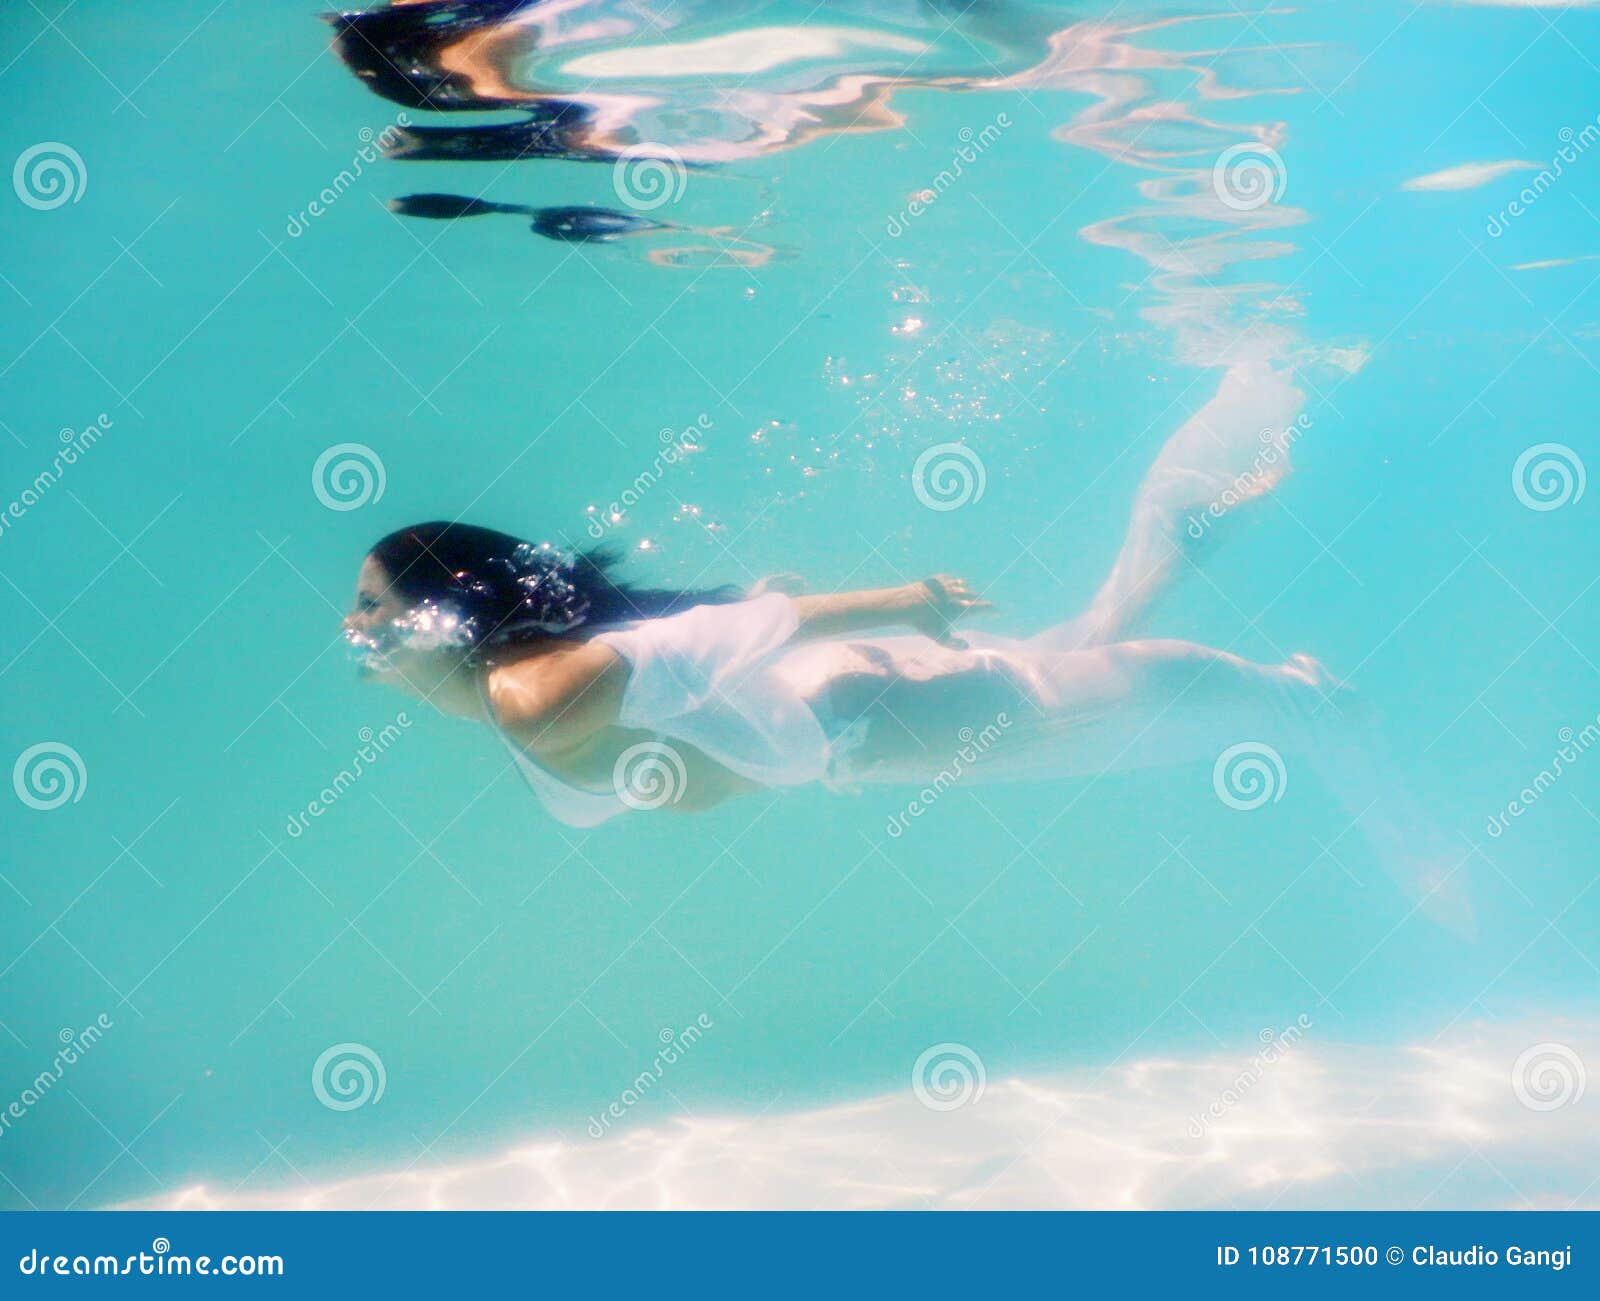 Woman beautiful body swim underwater in white dress-